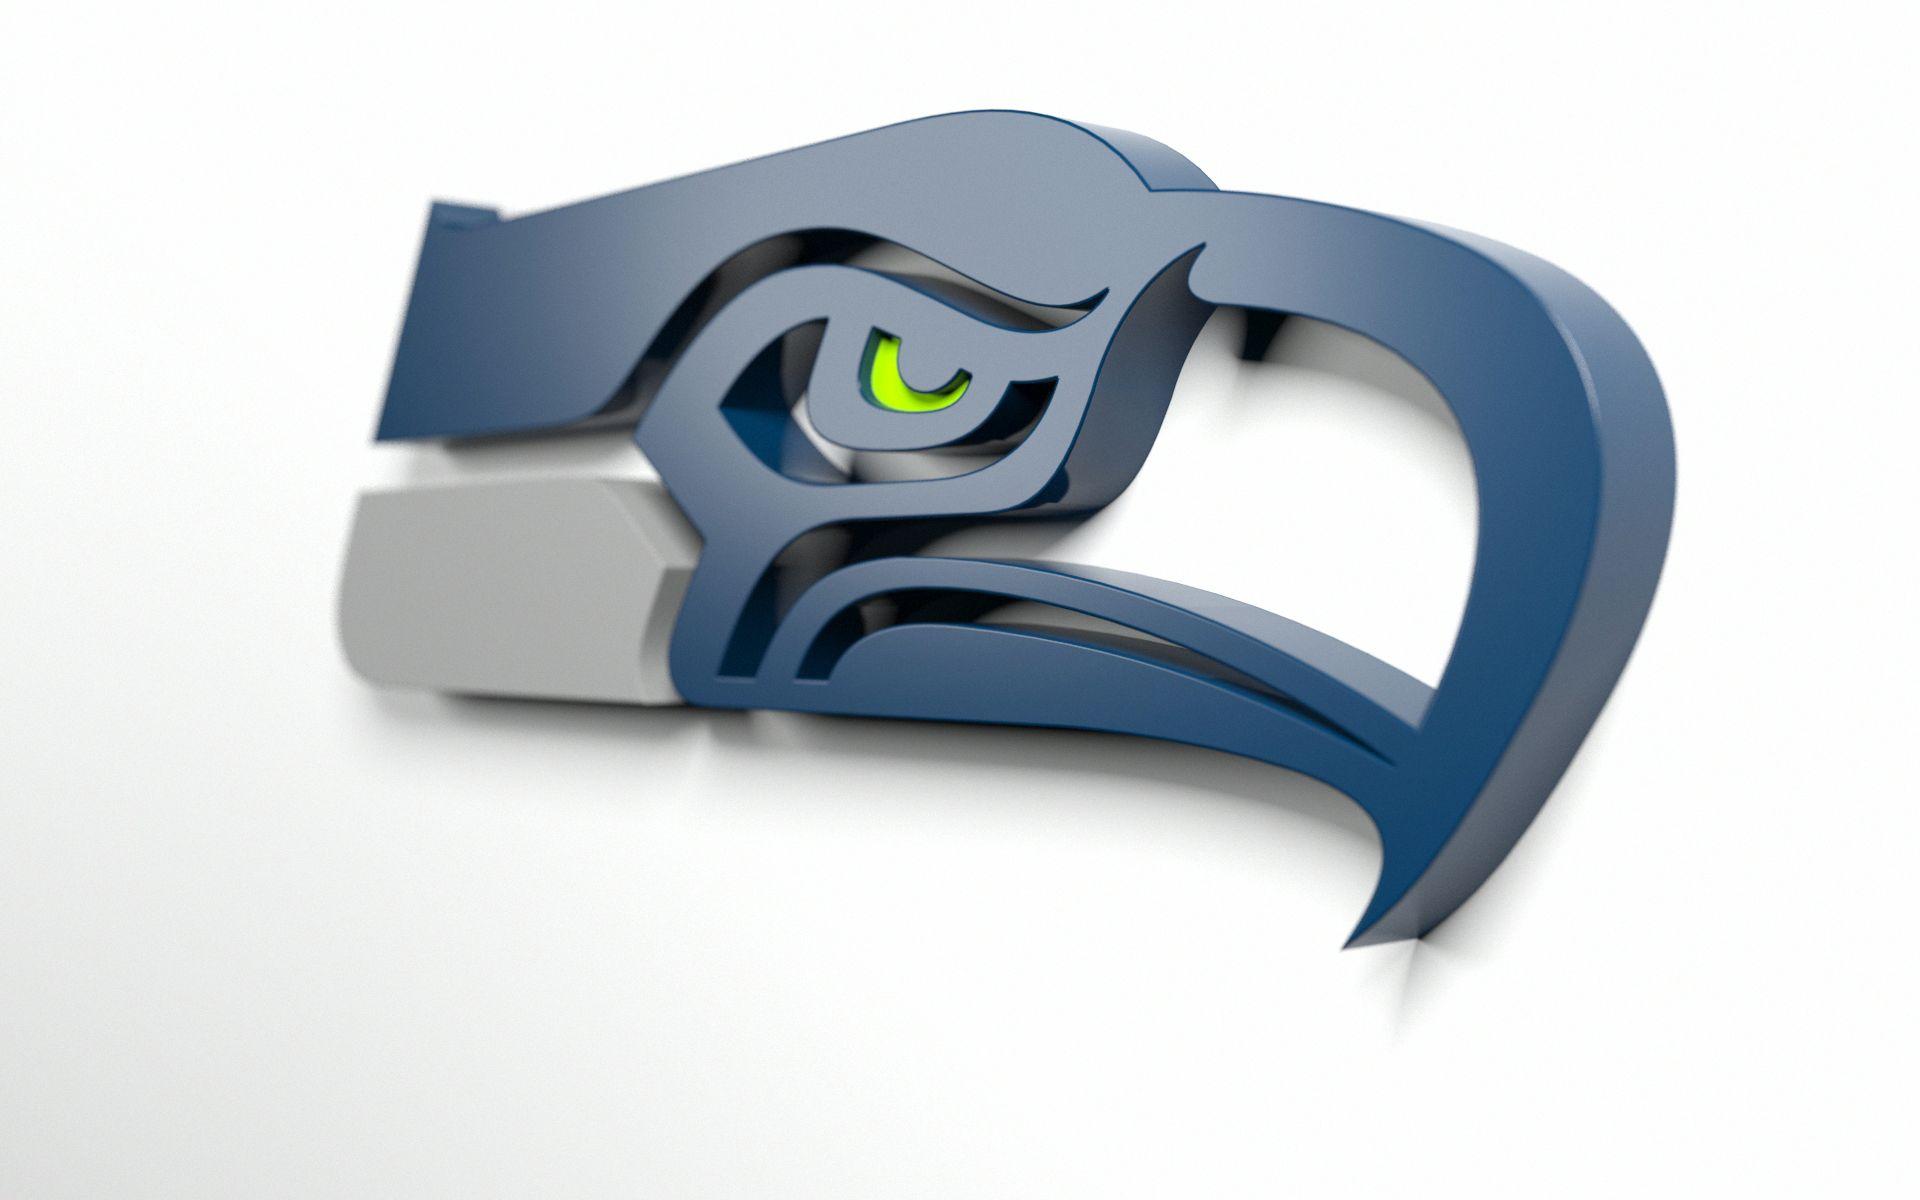 Seahawks Logo - Seahawks - Album on Imgur